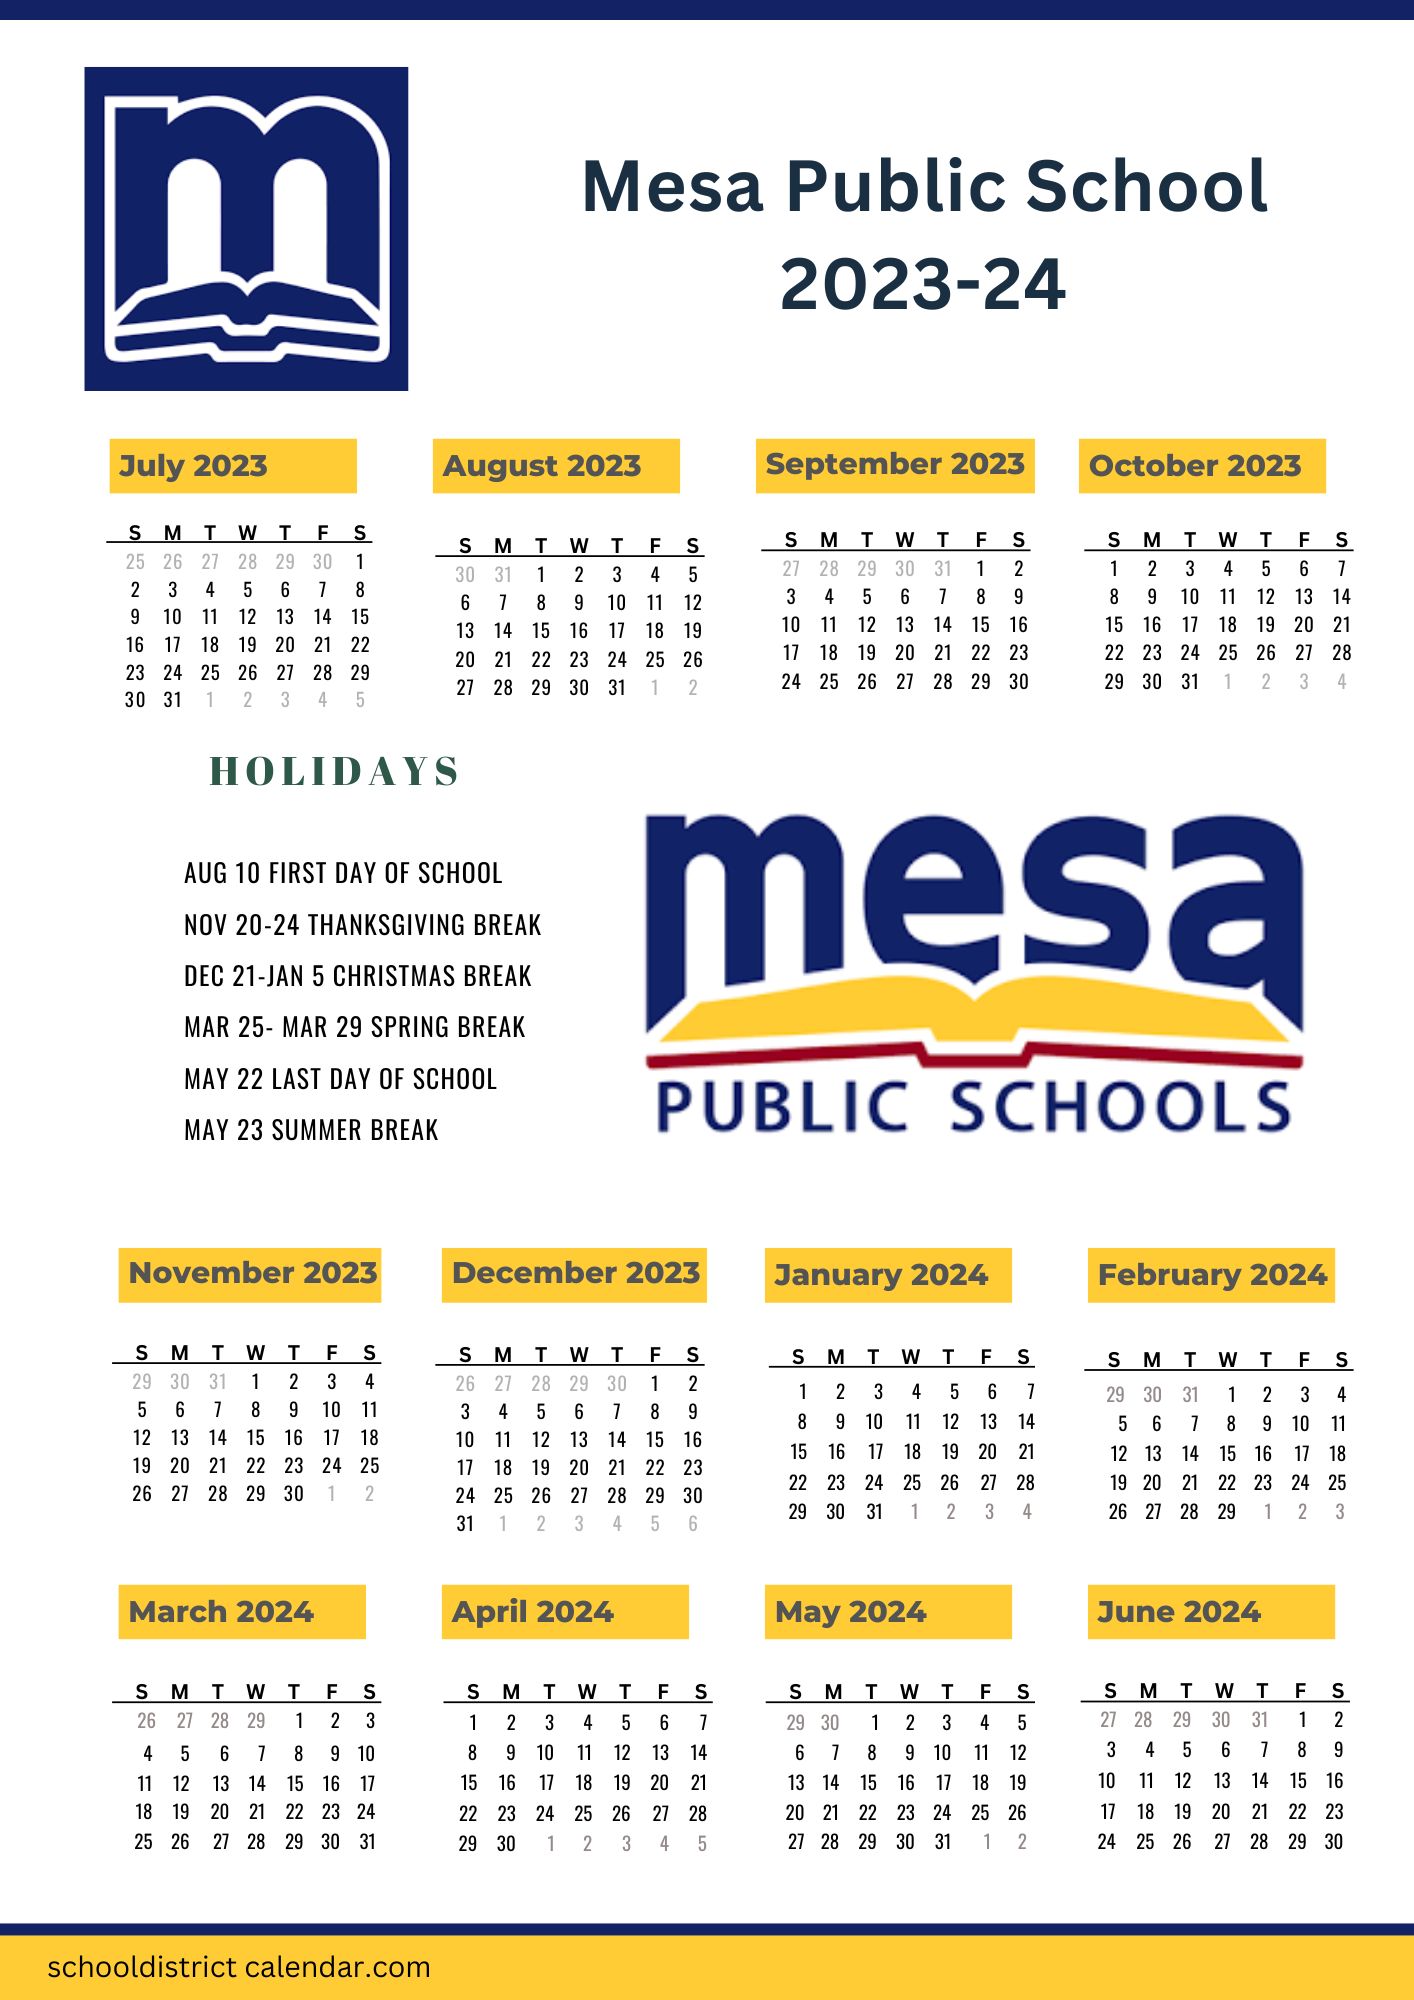 Mesa Public Schools Calendar Holidays 2023 2024